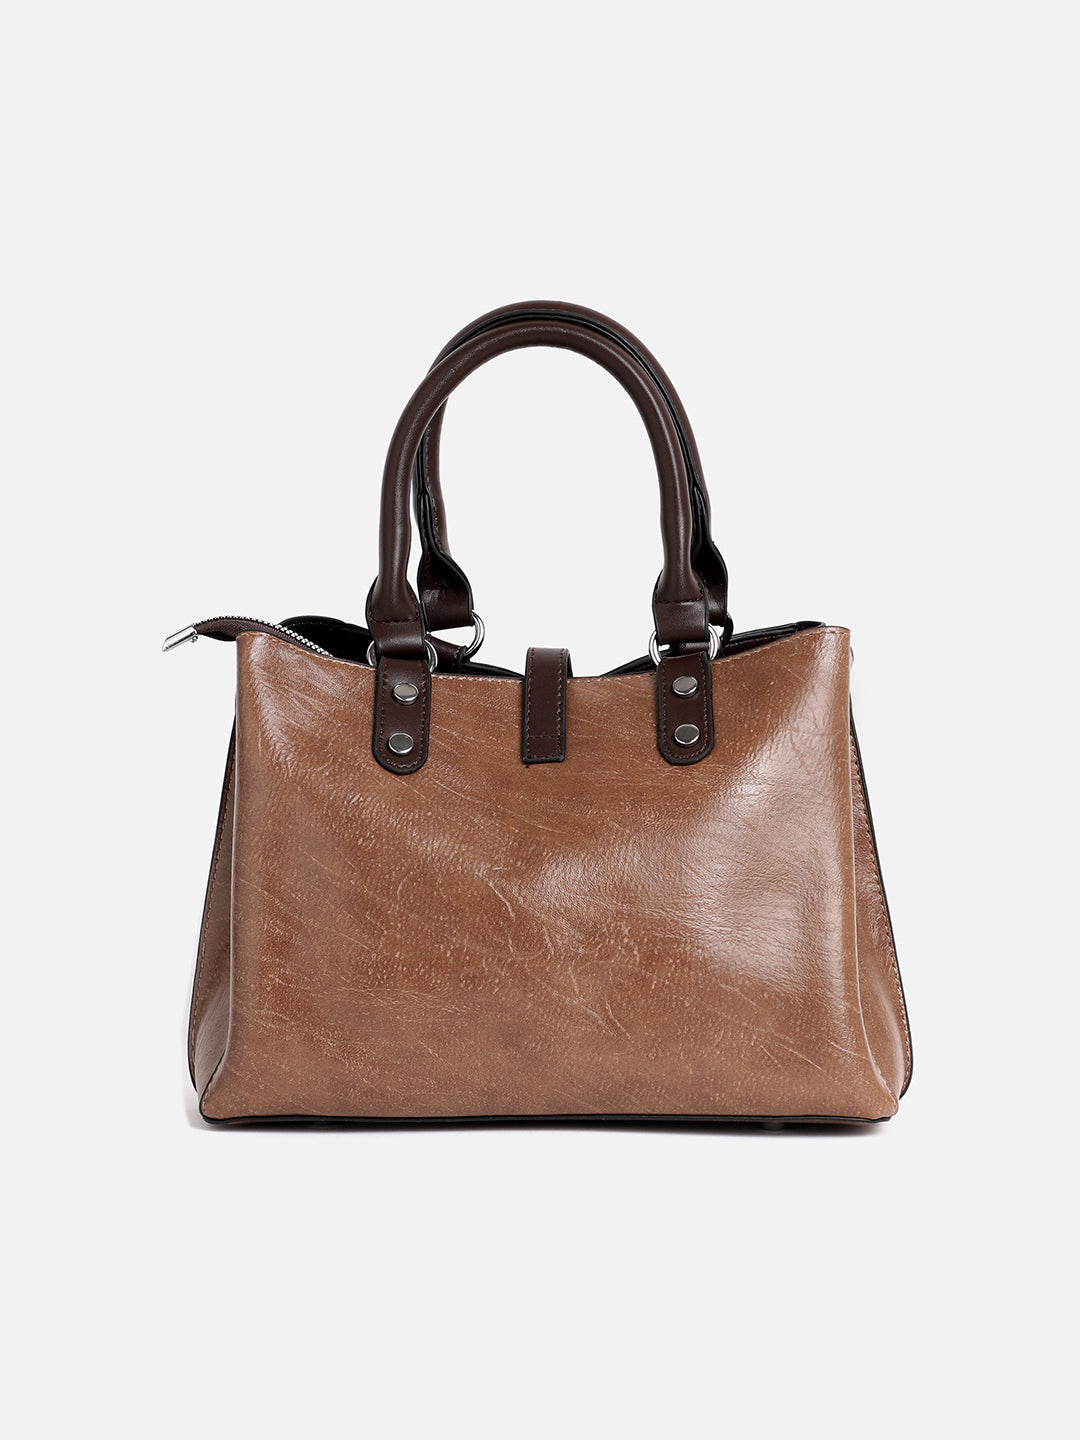 Perma Brown Tanned Handbag